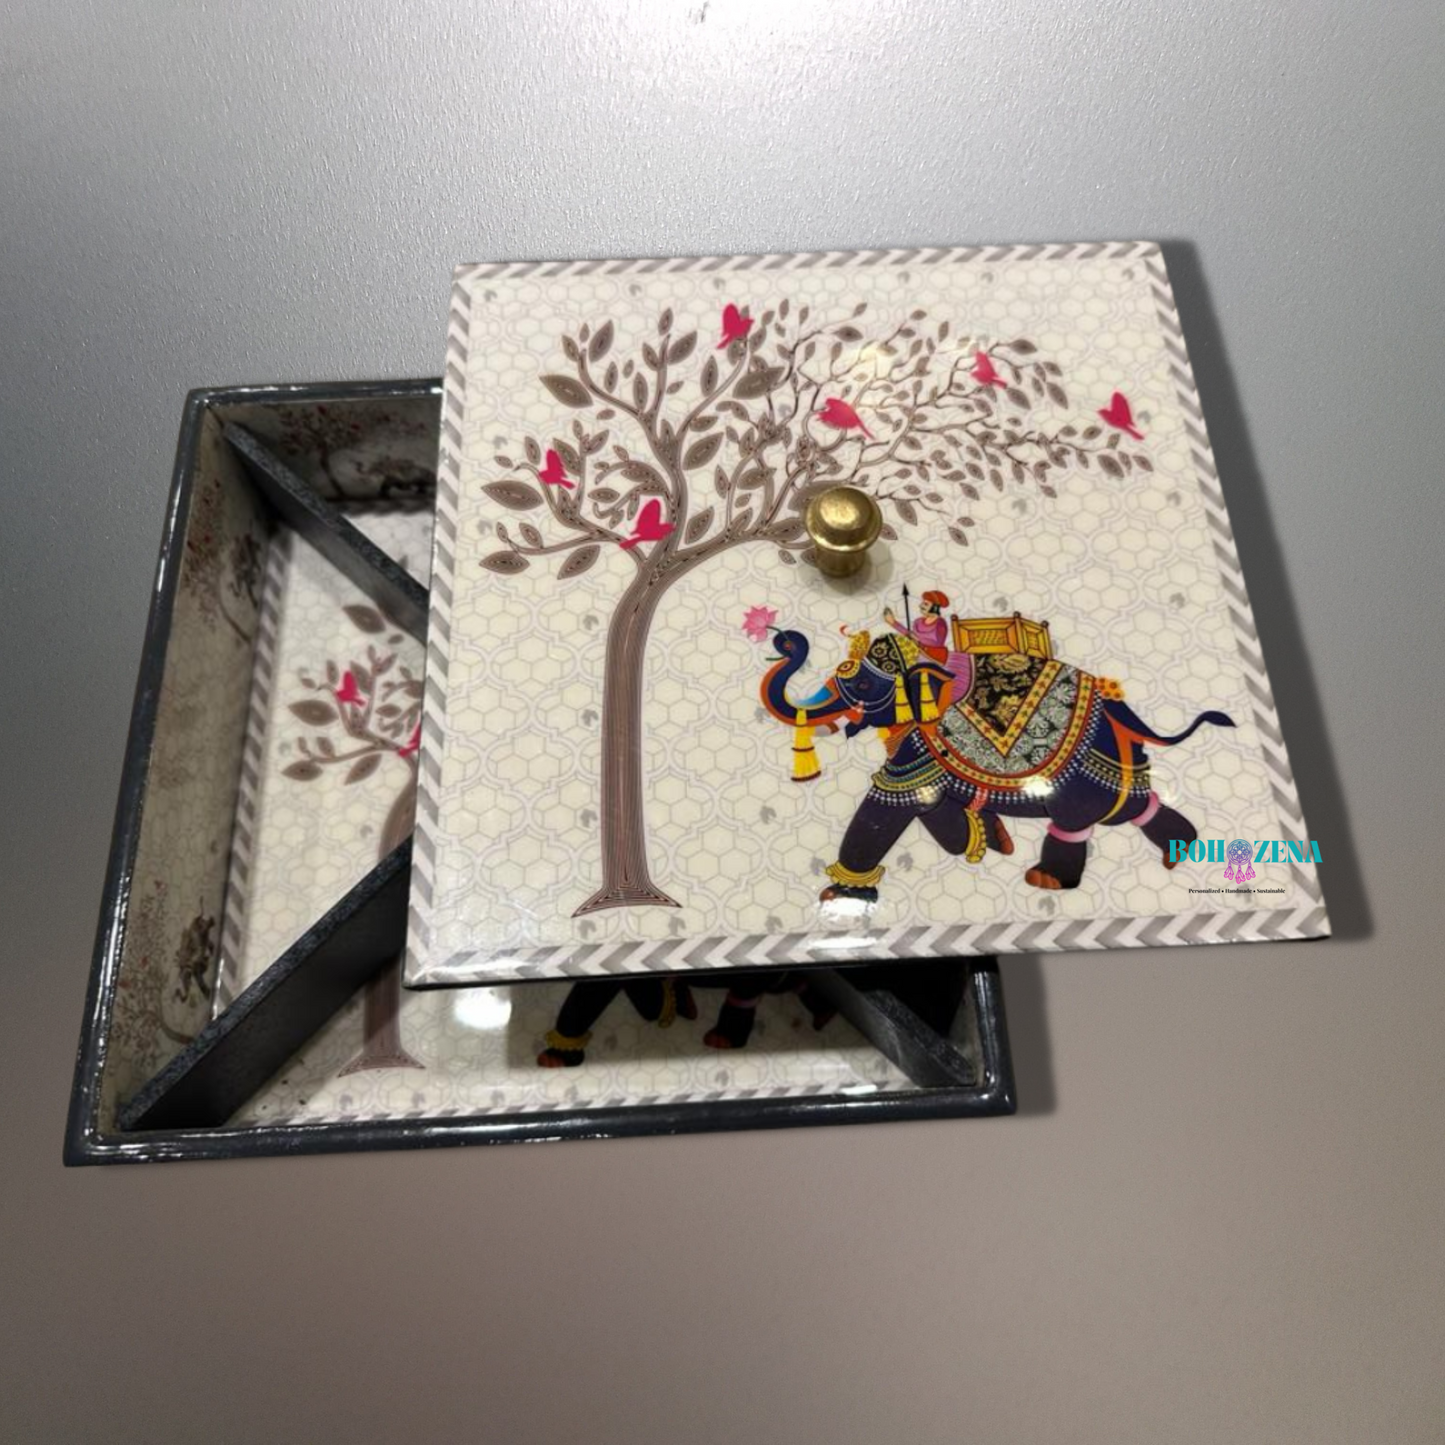 Handpainted Decorative gift Box